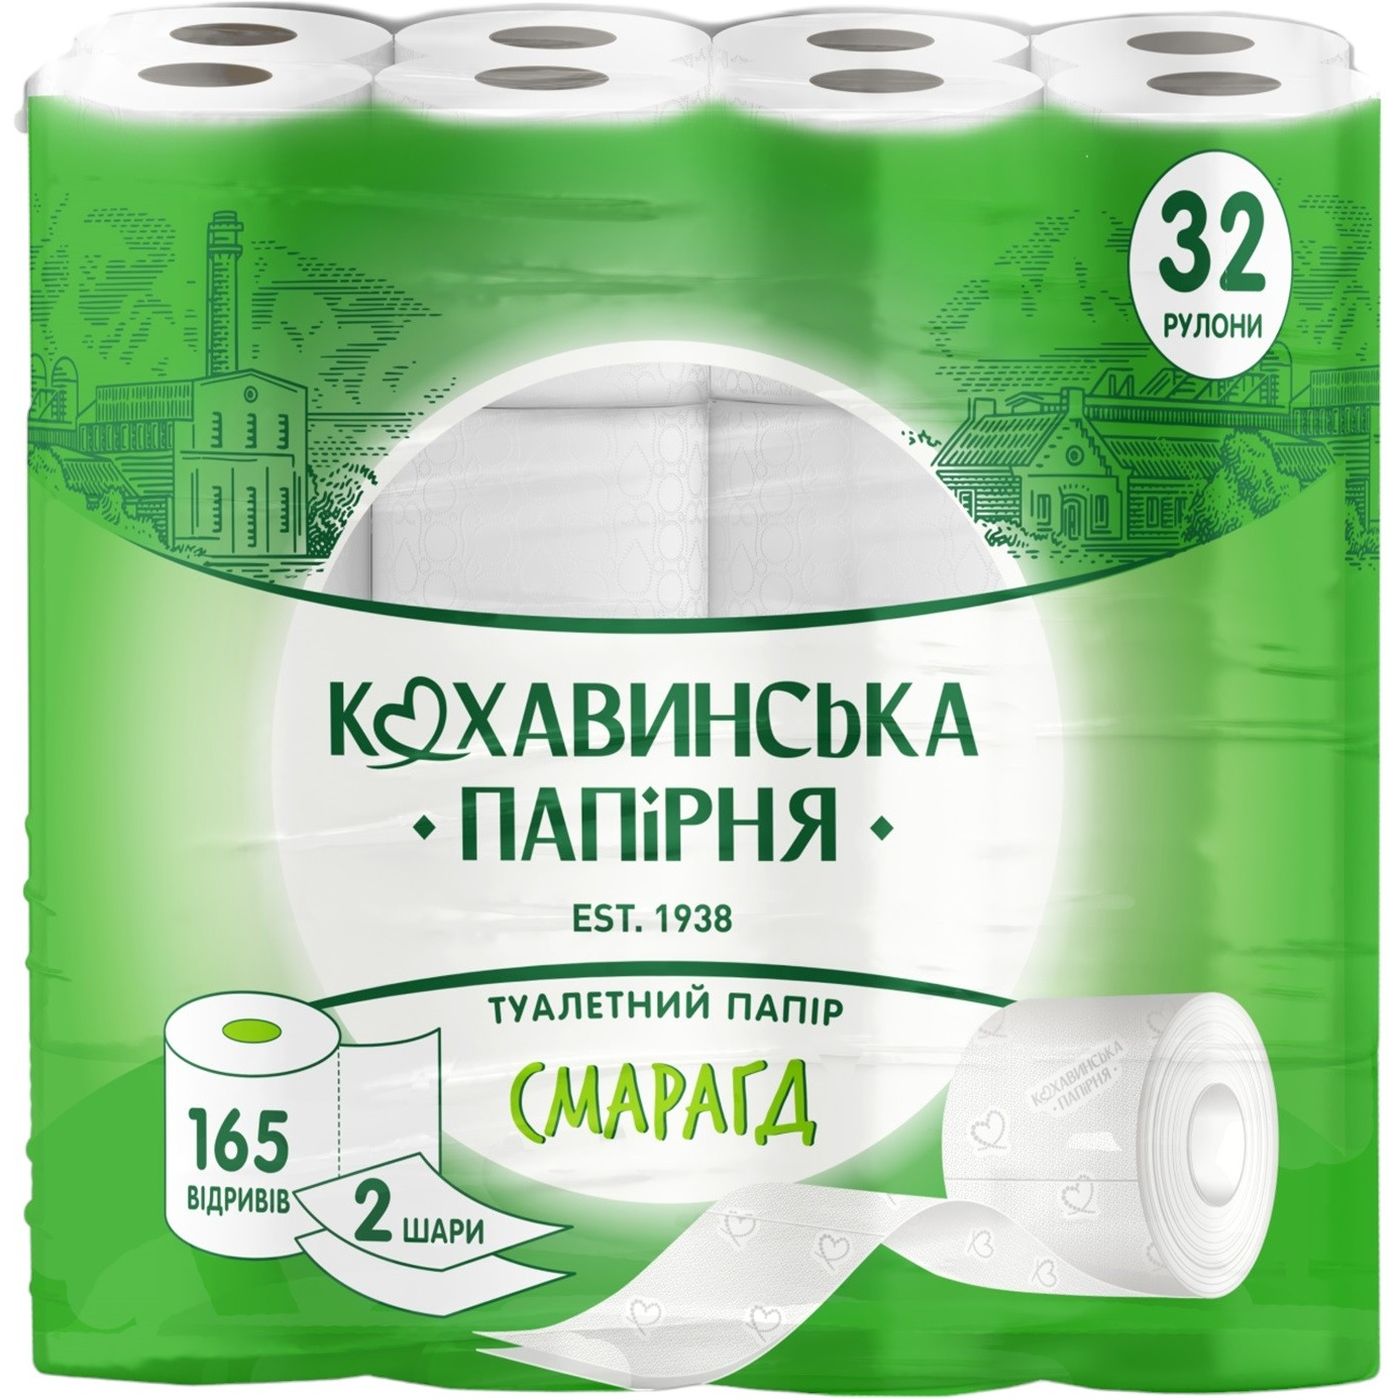 Туалетная бумага Кохавинська папірня Изумруд 2 слоя 165 отрывов 32 шт. - фото 1